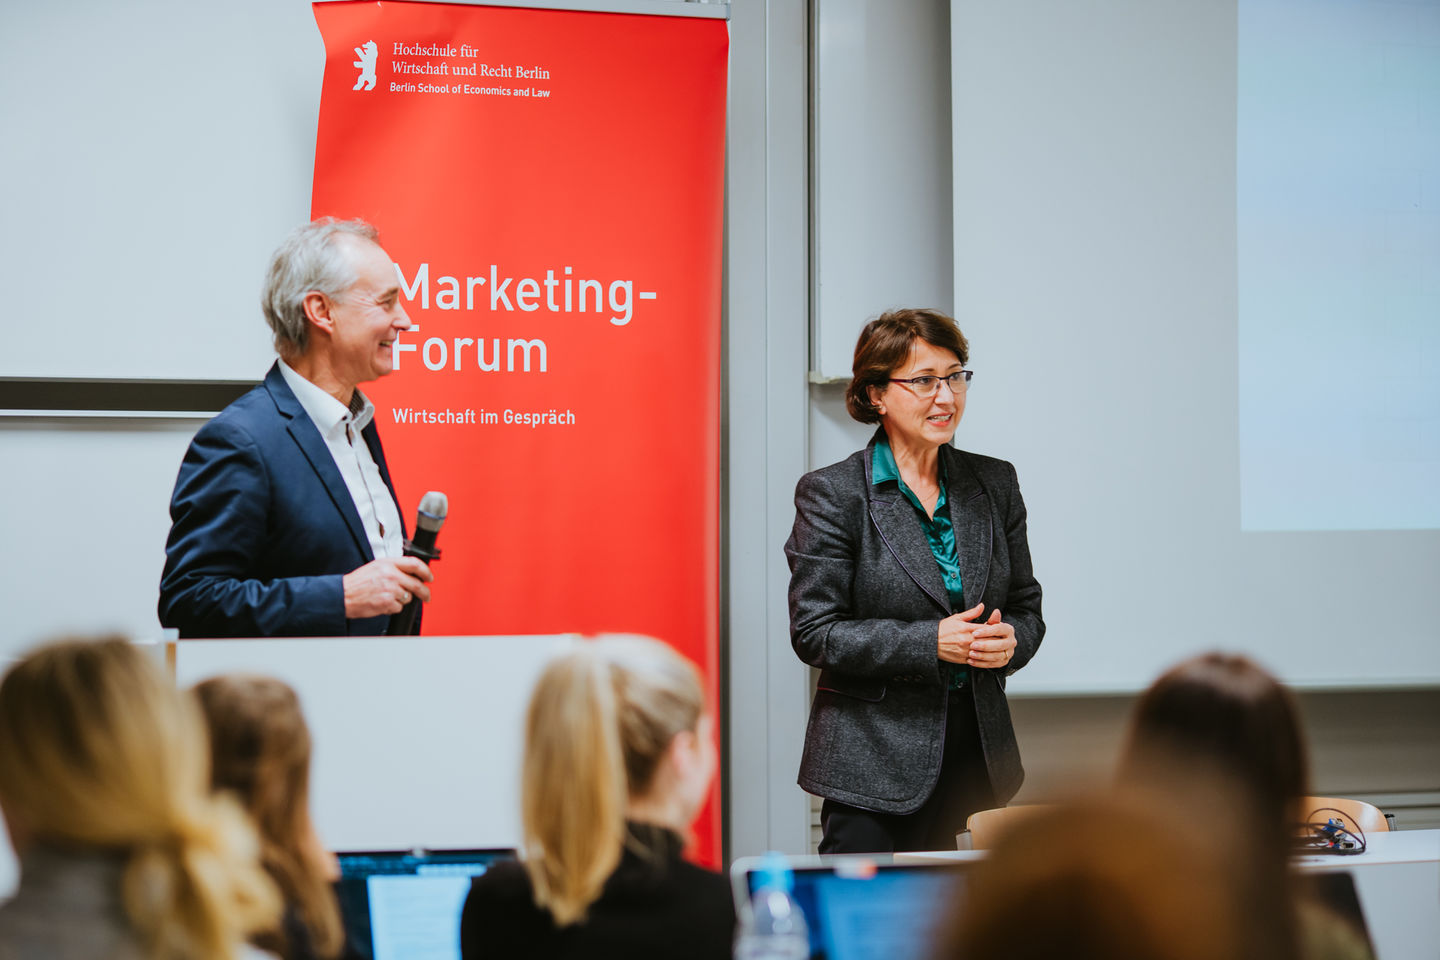 26. Marketing-Forum am 15. Januar 2020: BVG-Marketingleiter Frank Büch diskutiert mit Studierenden die Imagekampagne "Weil wir dich lieben". 